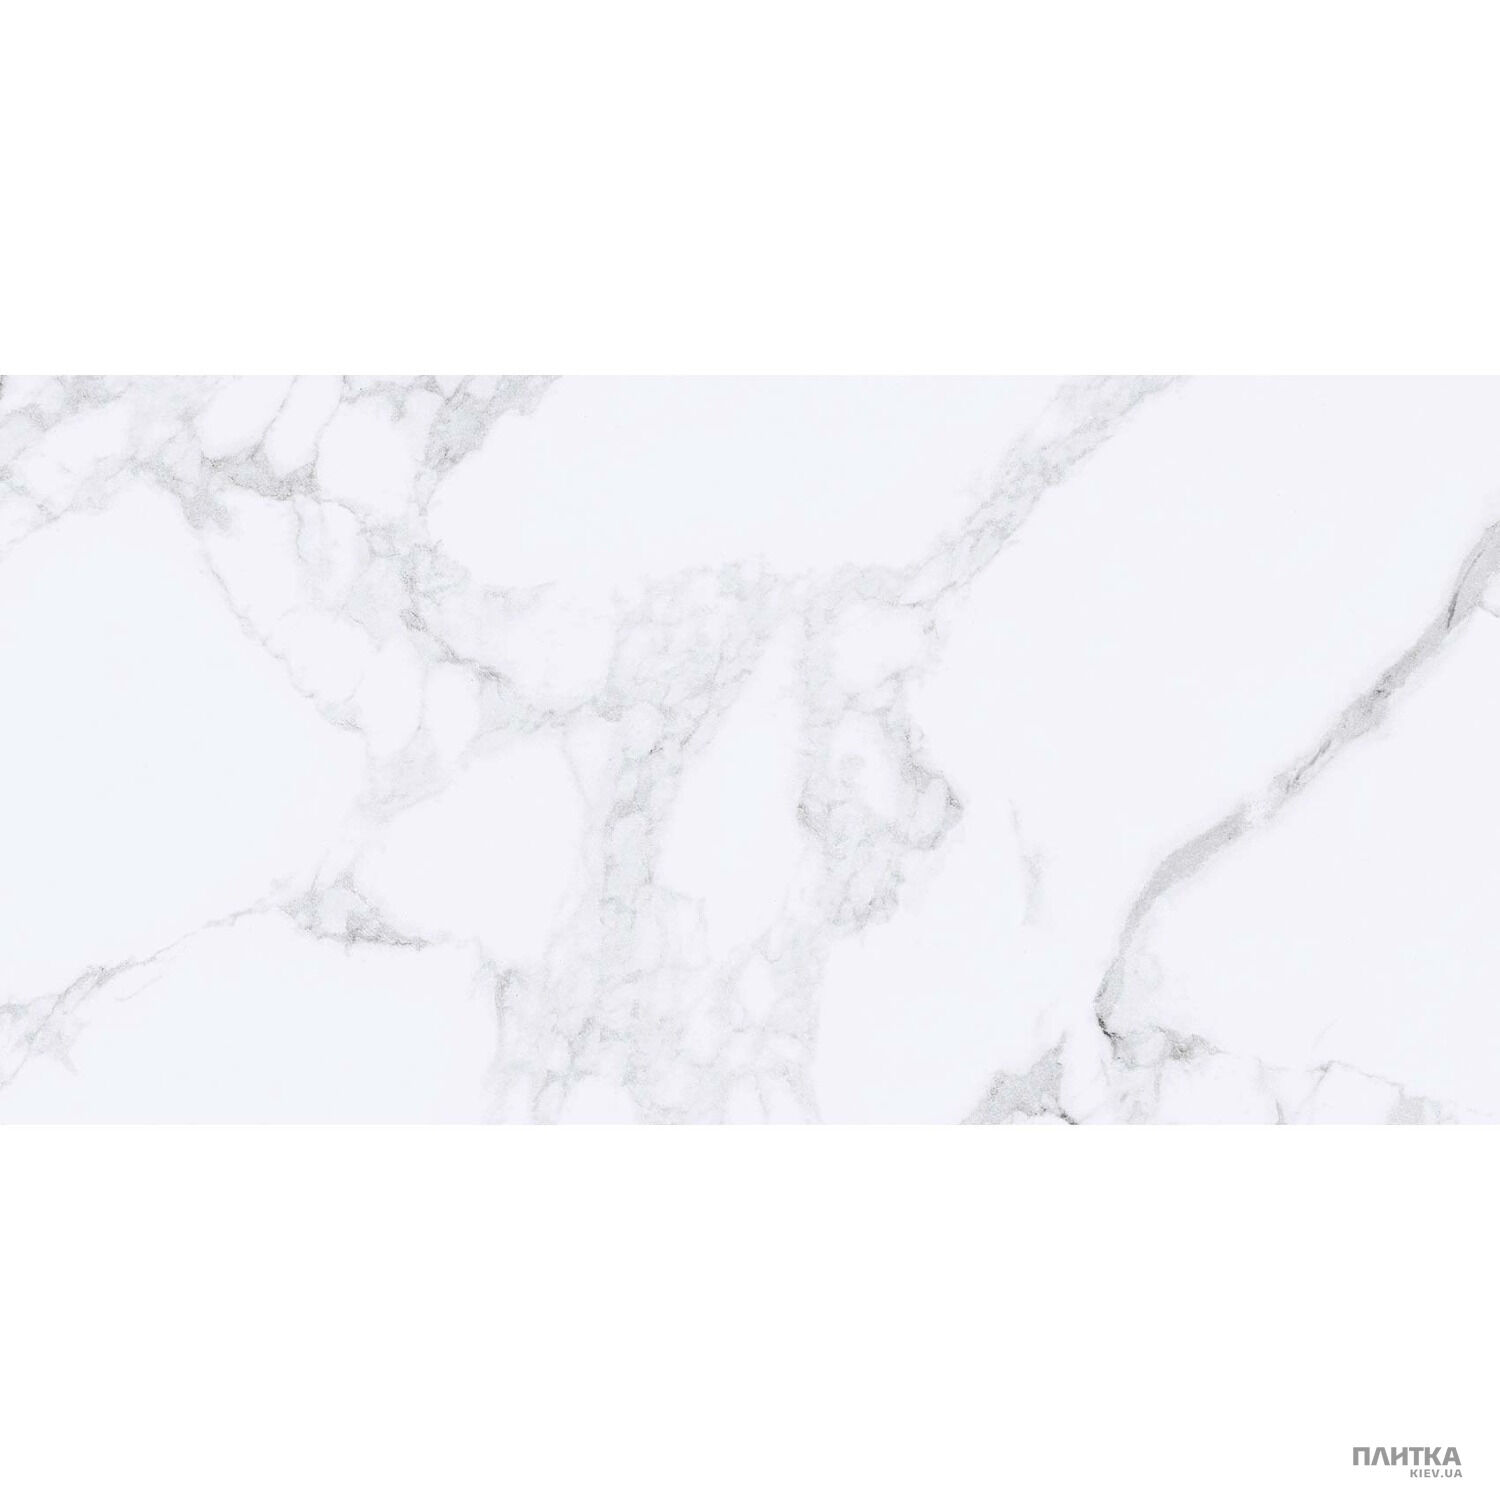 Плитка Golden Tile Marmo Bianco MARMO BIANCO белый G70051 белый